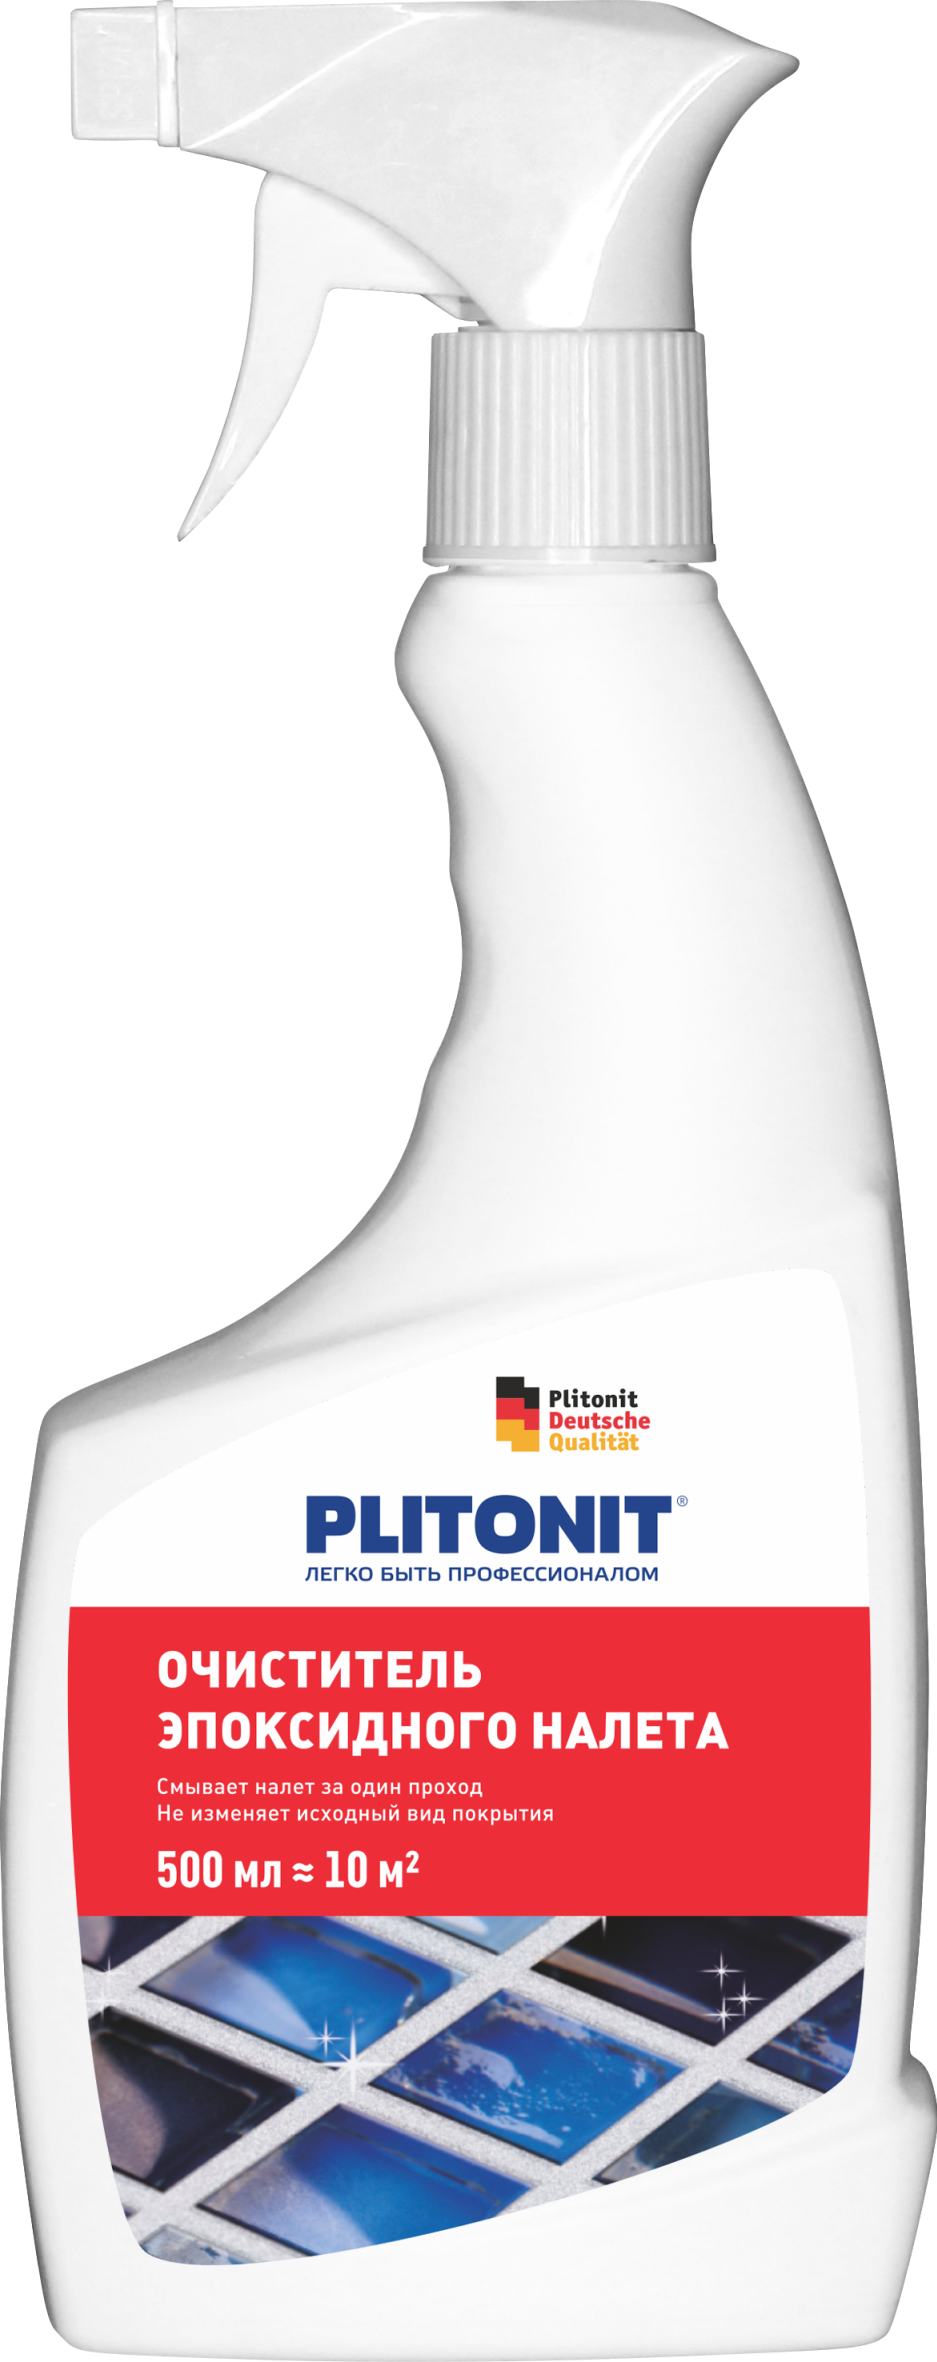 PLITONIT очиститель эпоксидного налета